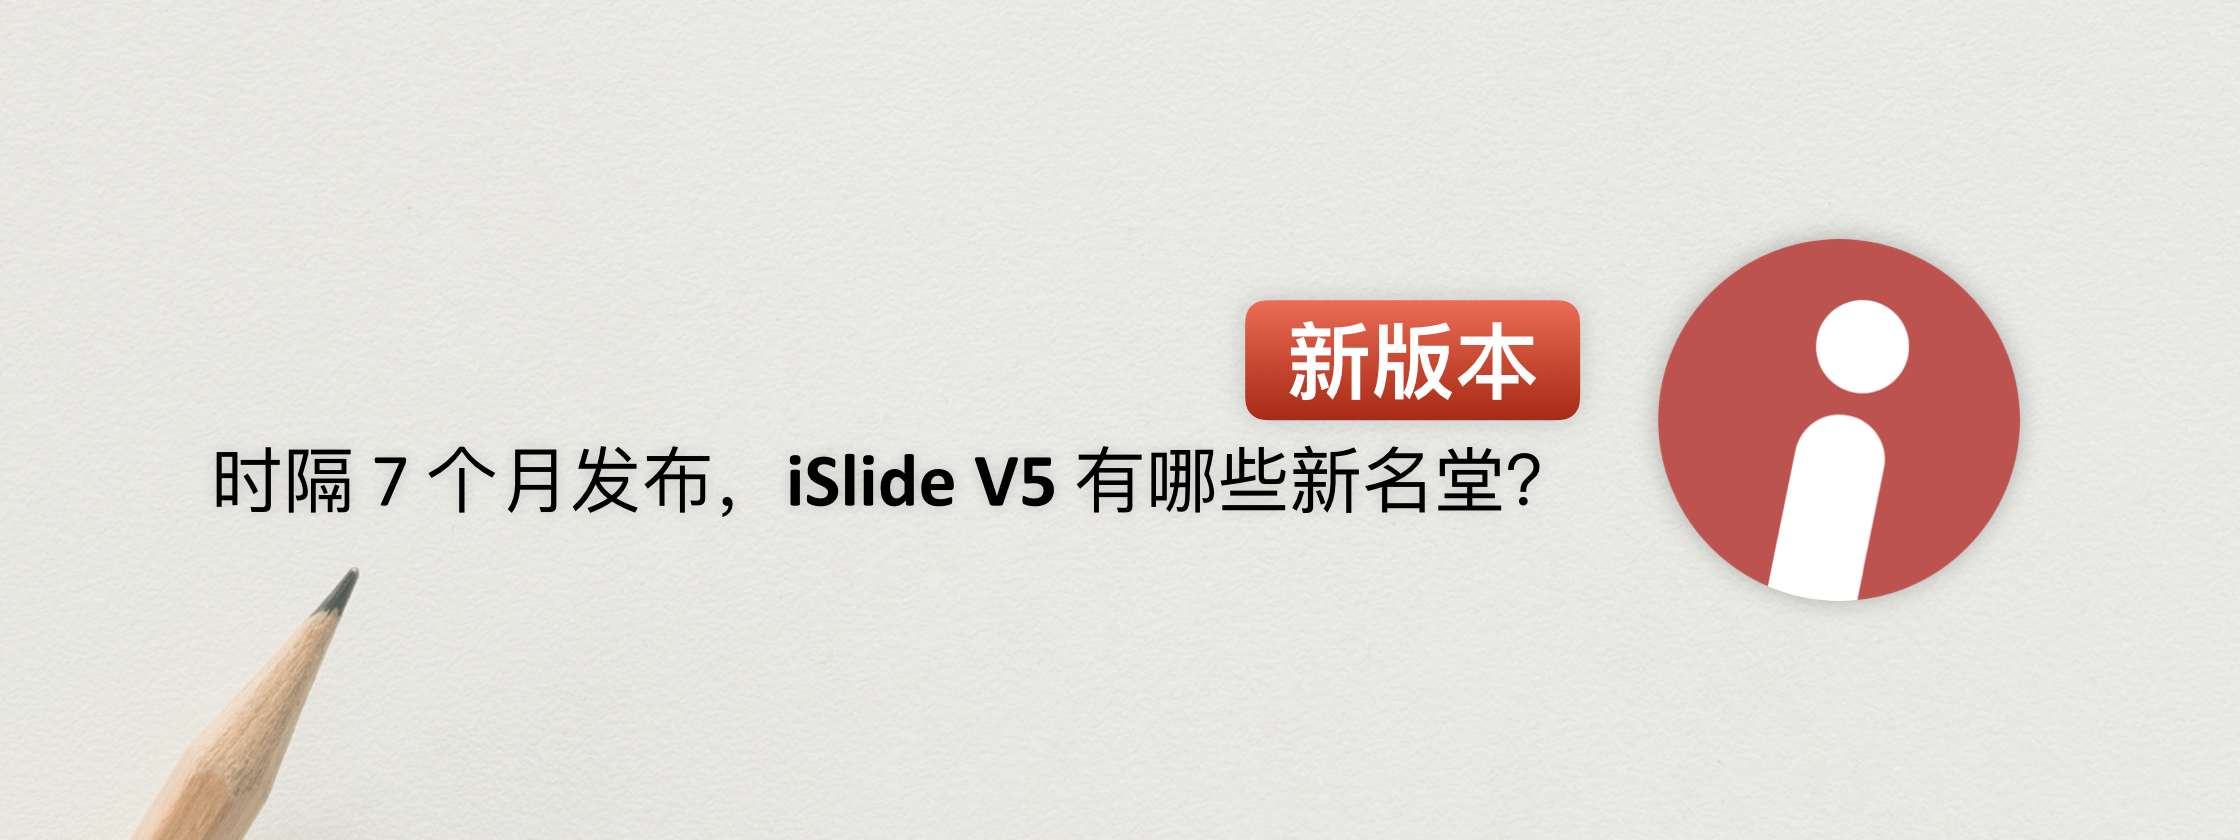 7 个月打磨的新版 iSlide，让 PPT 制作更简单、更专业